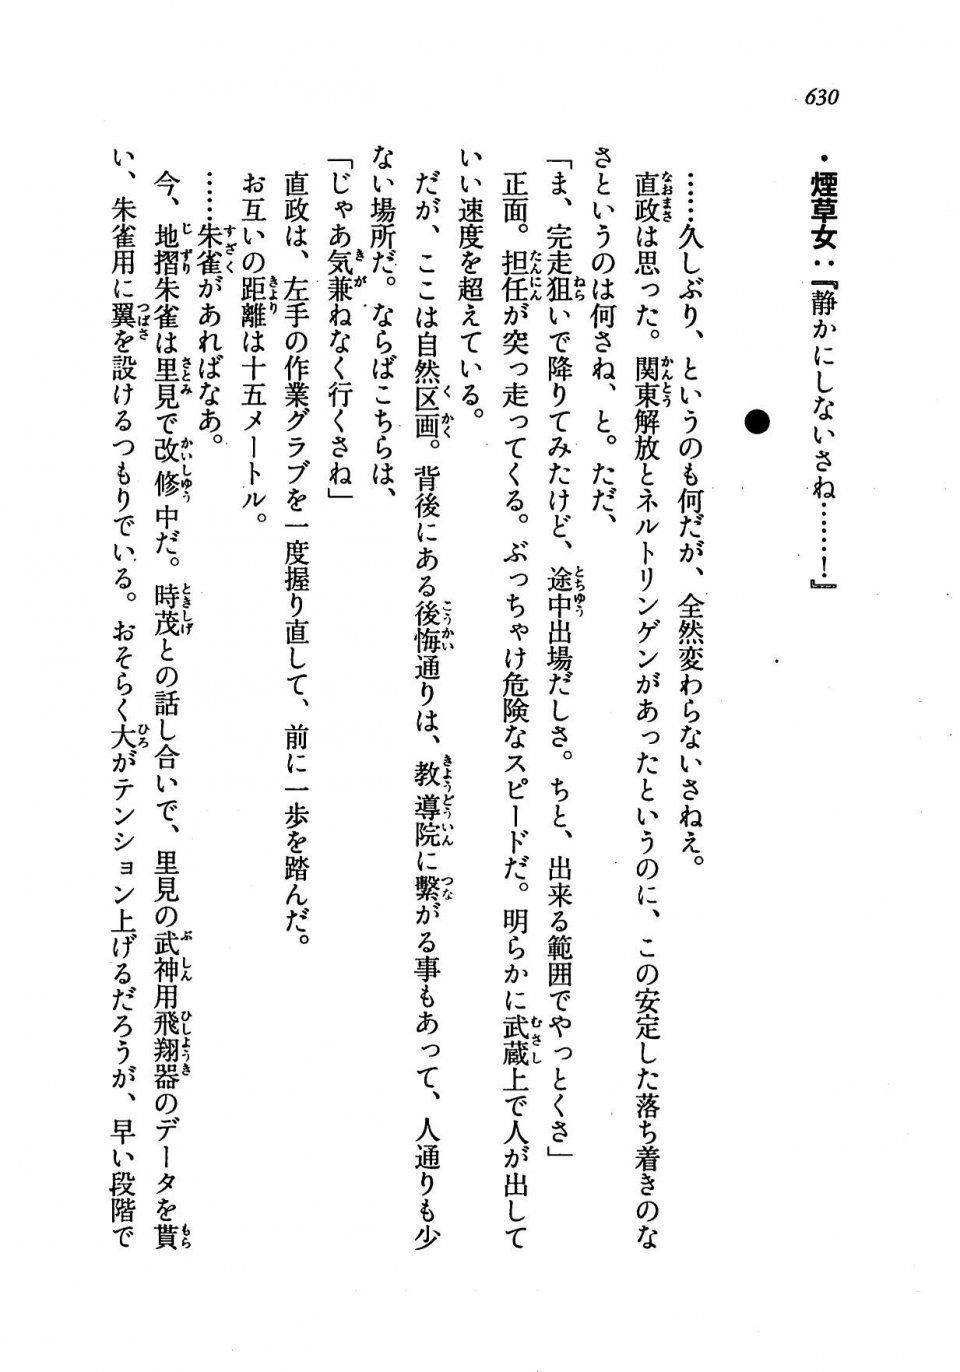 Kyoukai Senjou no Horizon LN Vol 19(8A) - Photo #630